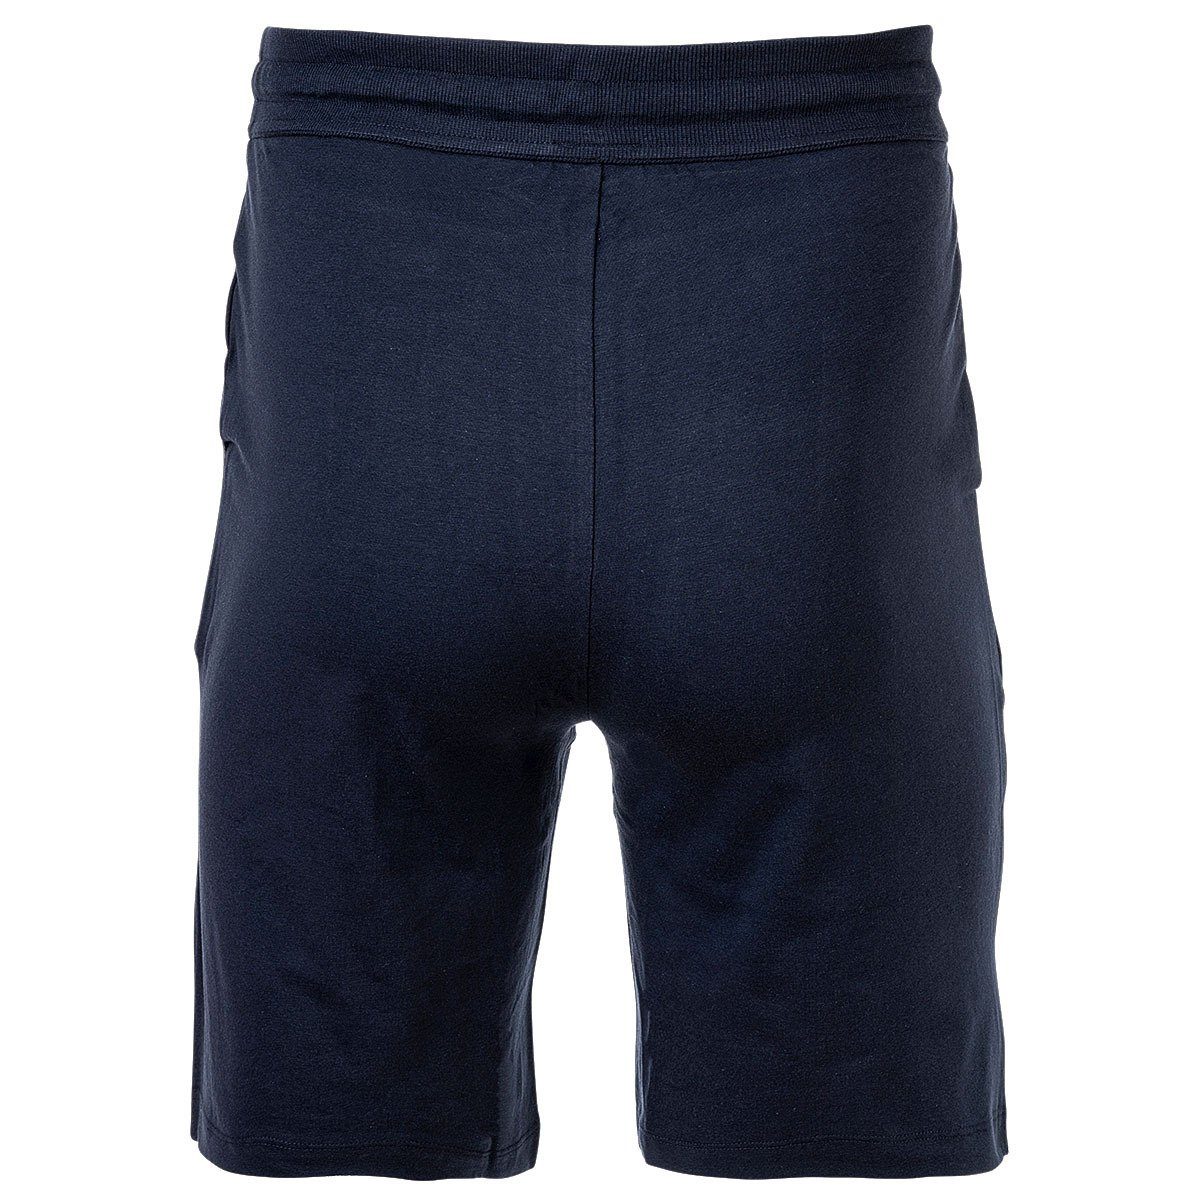 Joop! Sweatshorts Herren Blau Jersey-Shorts Loungewear, - Jogginghose